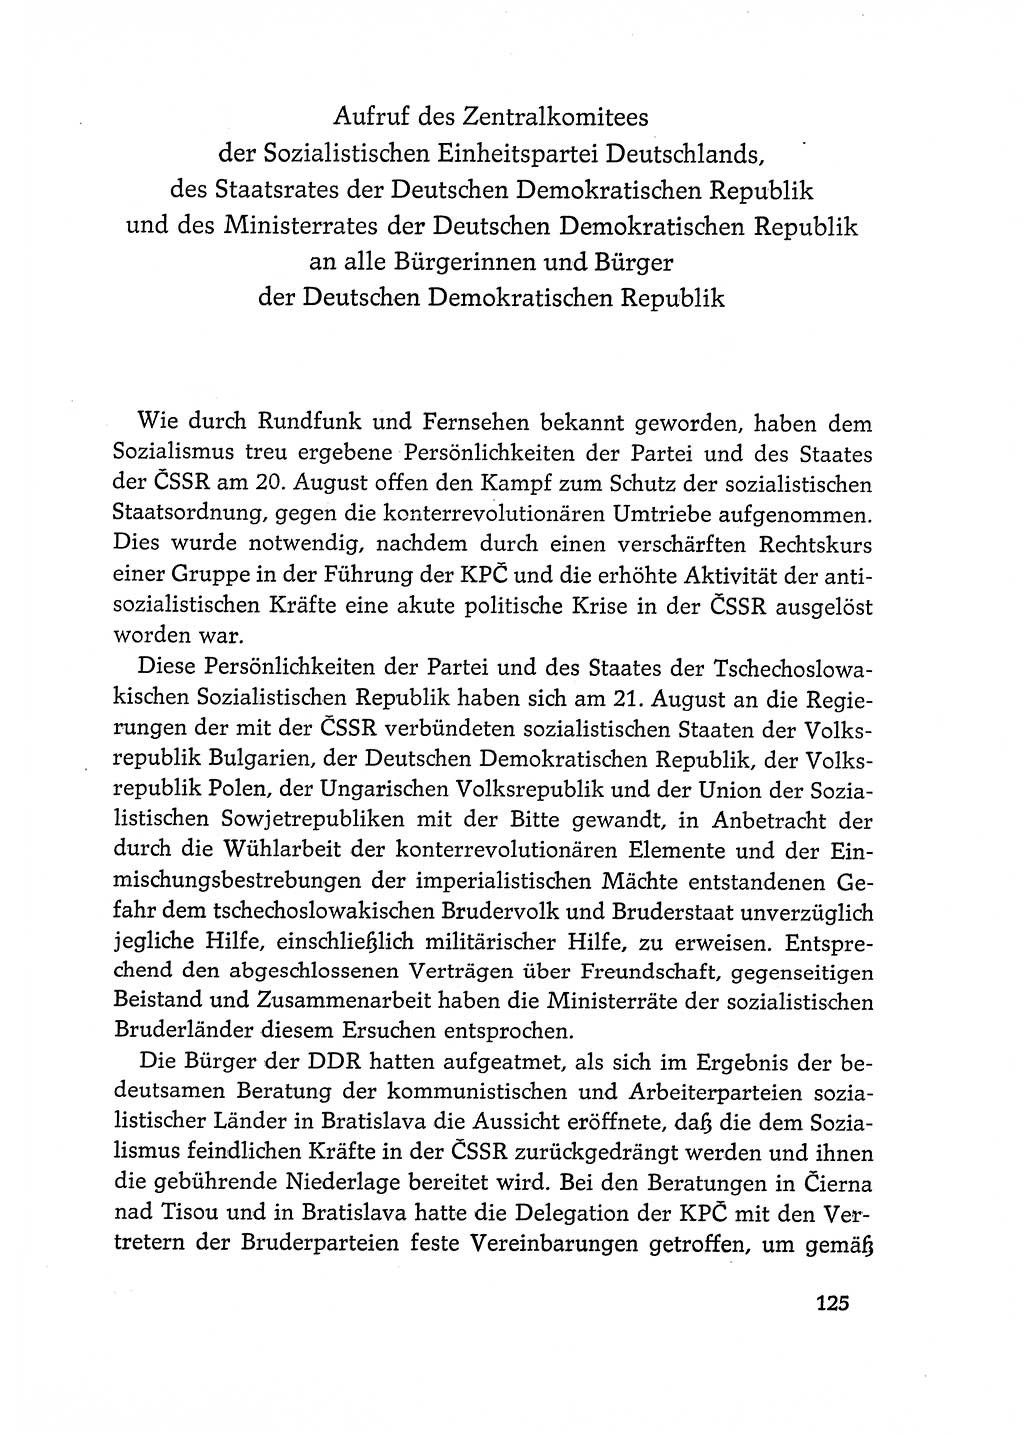 Dokumente der Sozialistischen Einheitspartei Deutschlands (SED) [Deutsche Demokratische Republik (DDR)] 1968-1969, Seite 125 (Dok. SED DDR 1968-1969, S. 125)